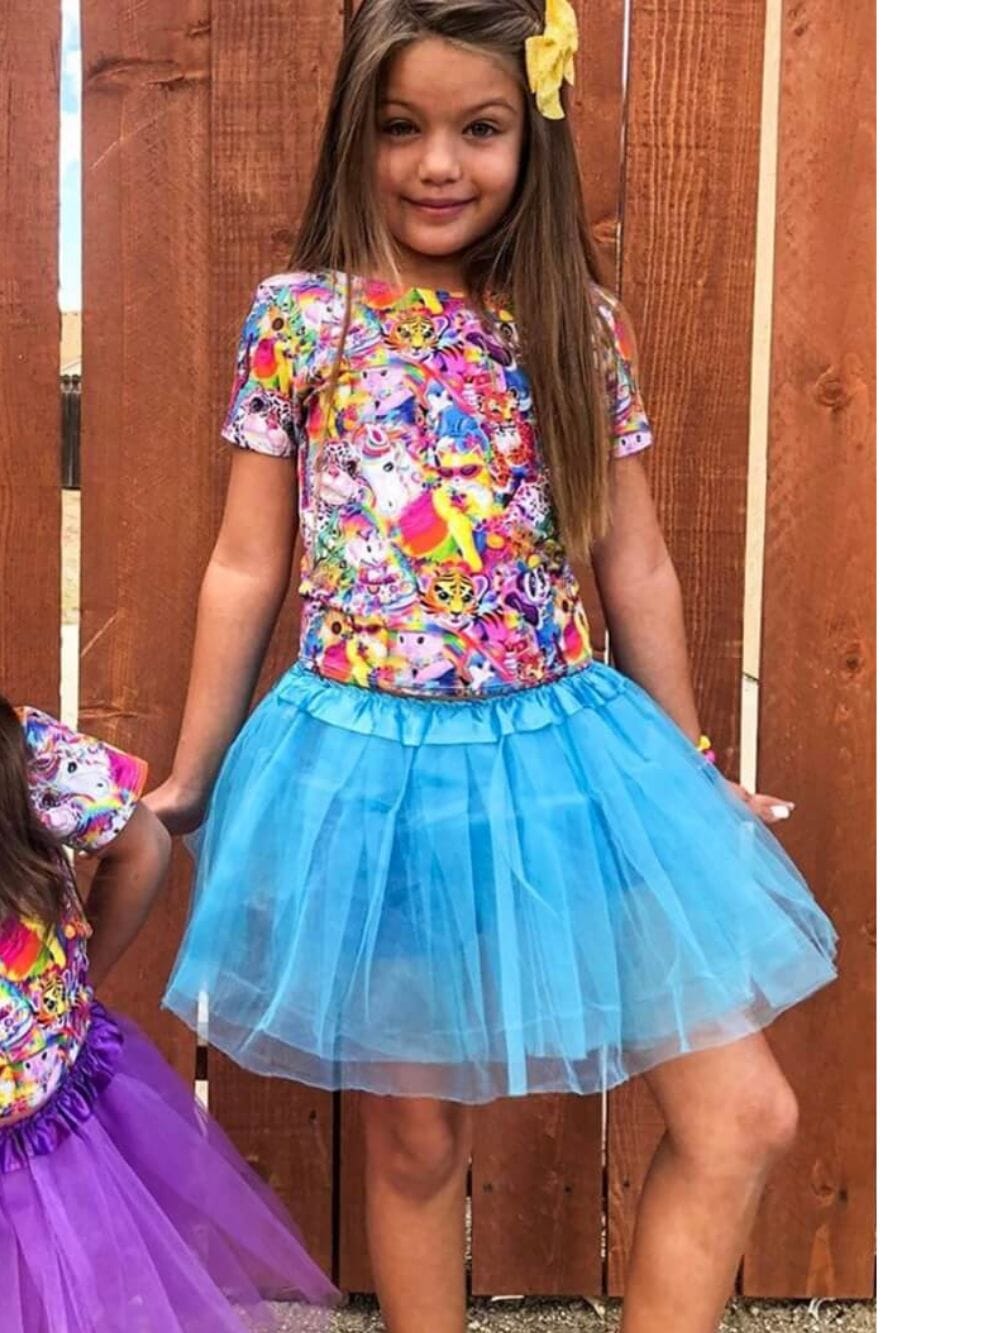 Turquoise Blue Tutu Skirt - Kids Size 3-Layer Tulle Basic Ballet Dance Costume Tutus for Girls - Sydney So Sweet